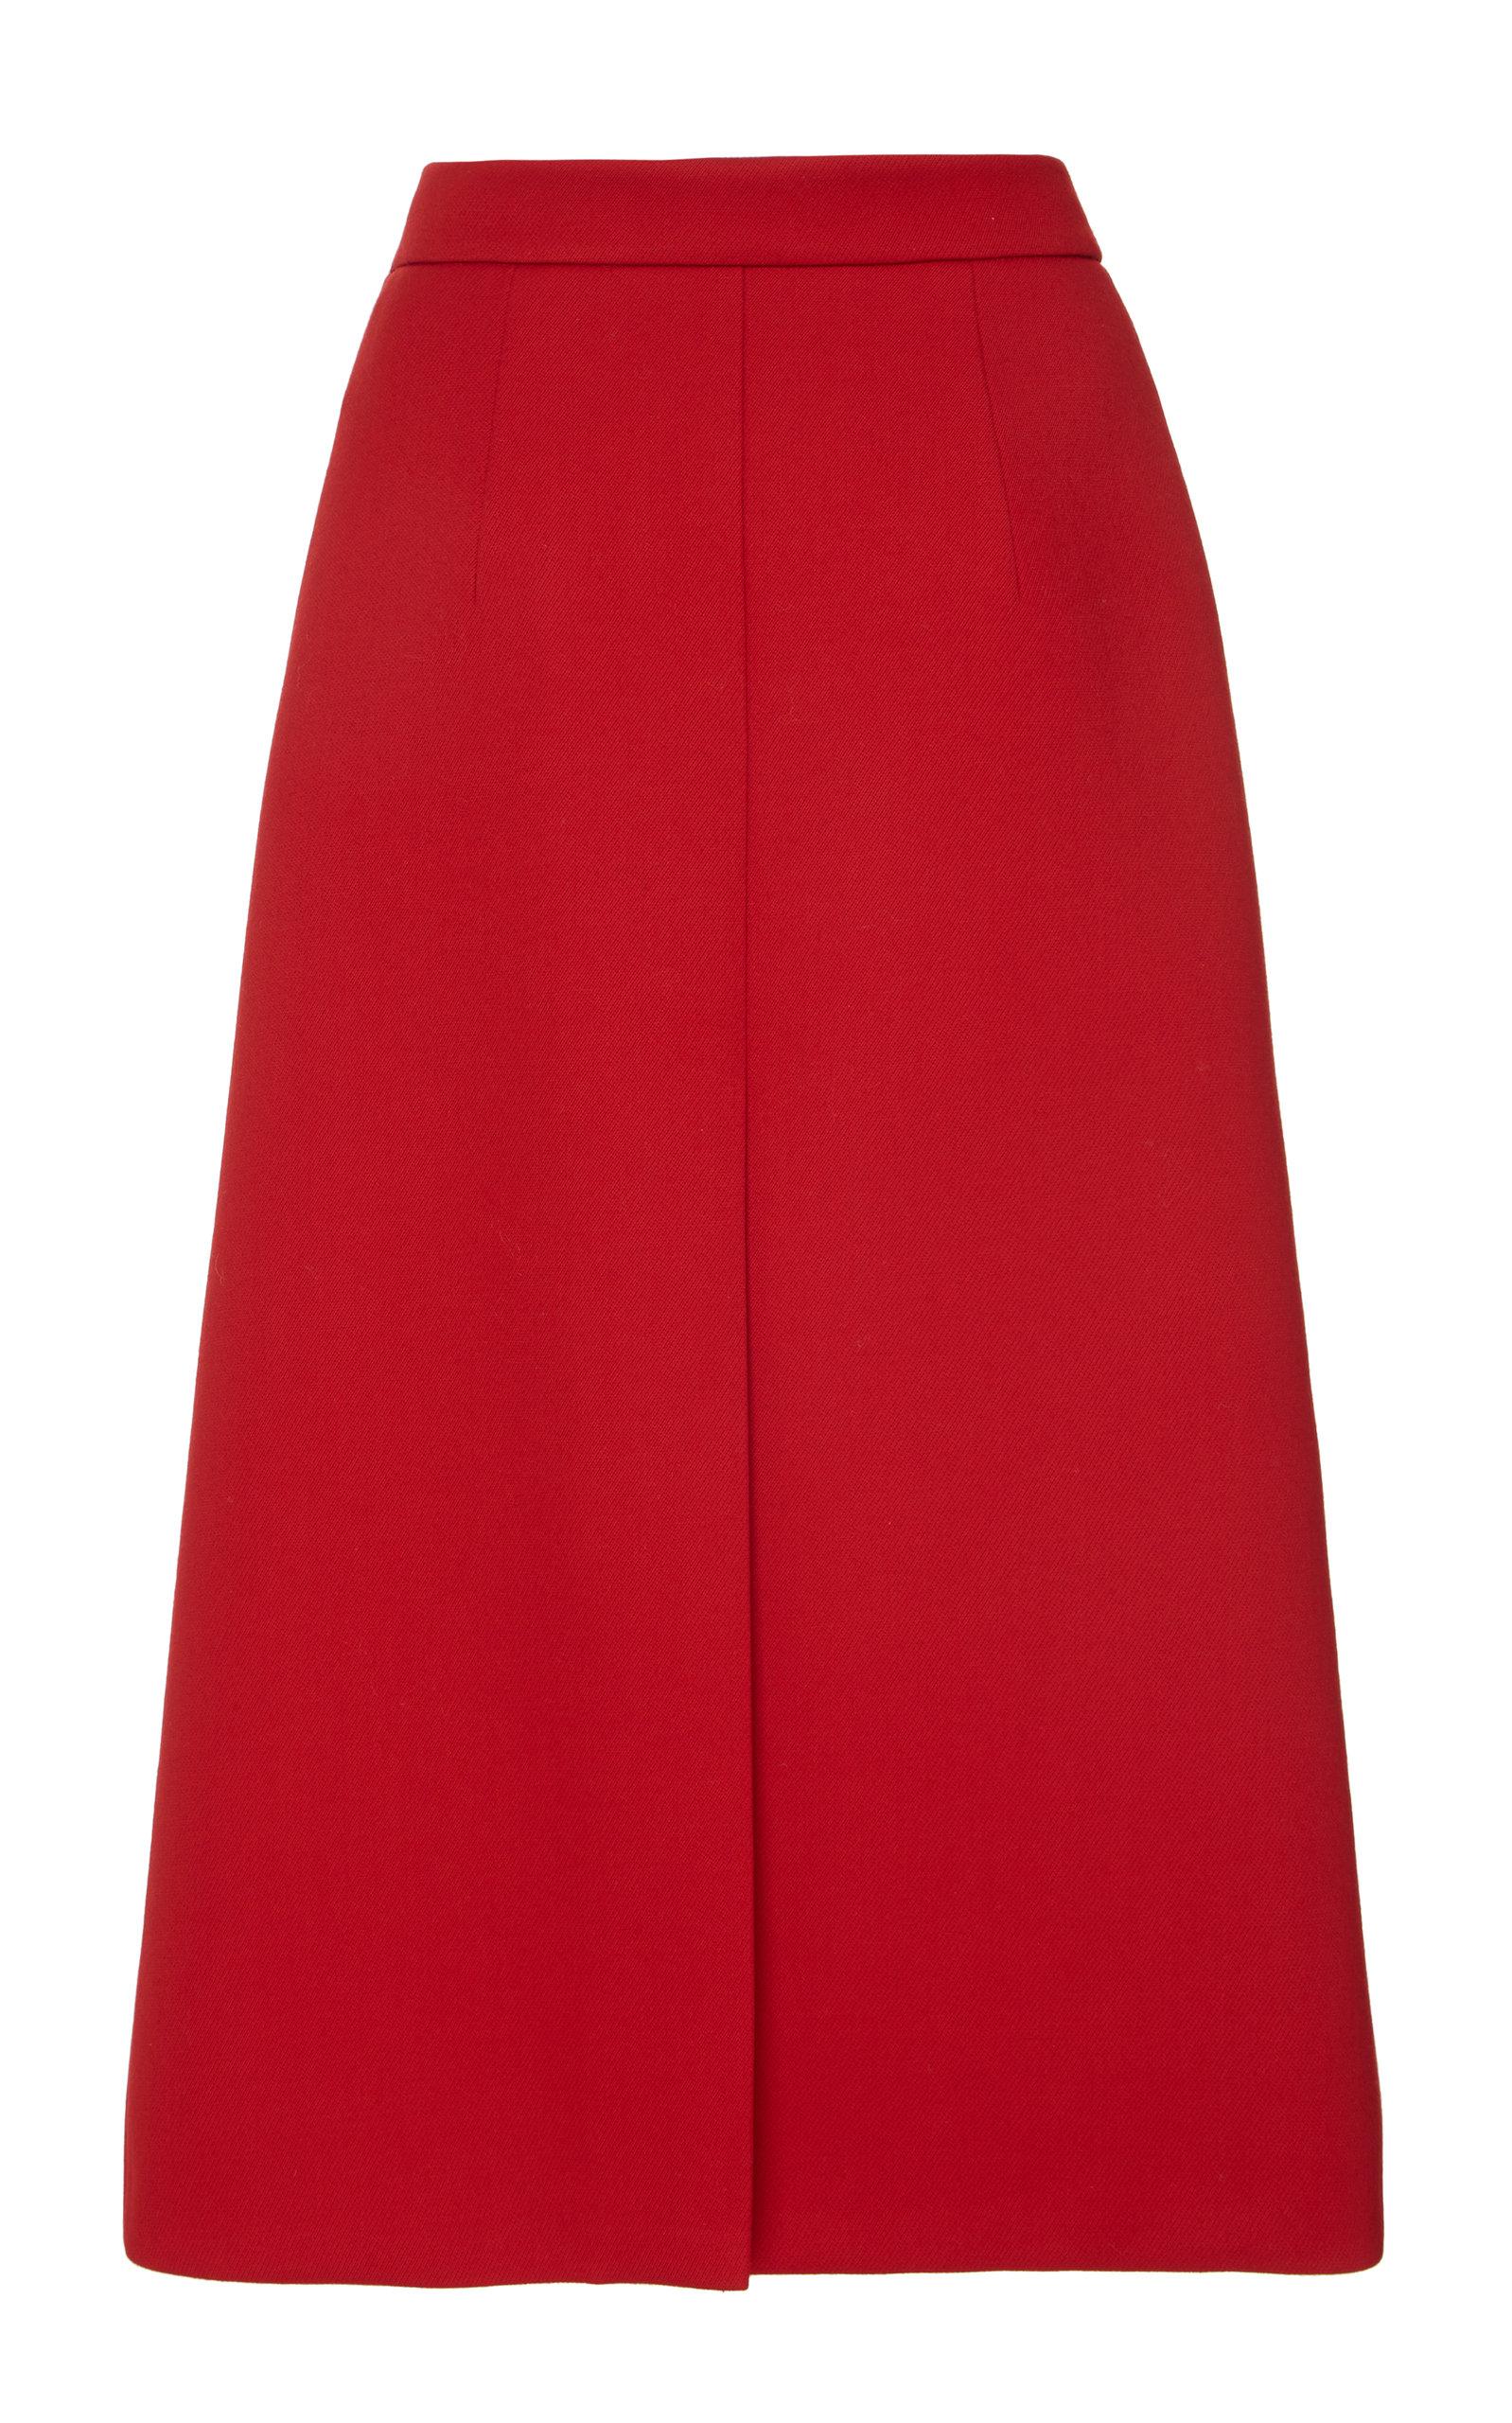 Prada Gabardine A-line Skirt in Red - Lyst